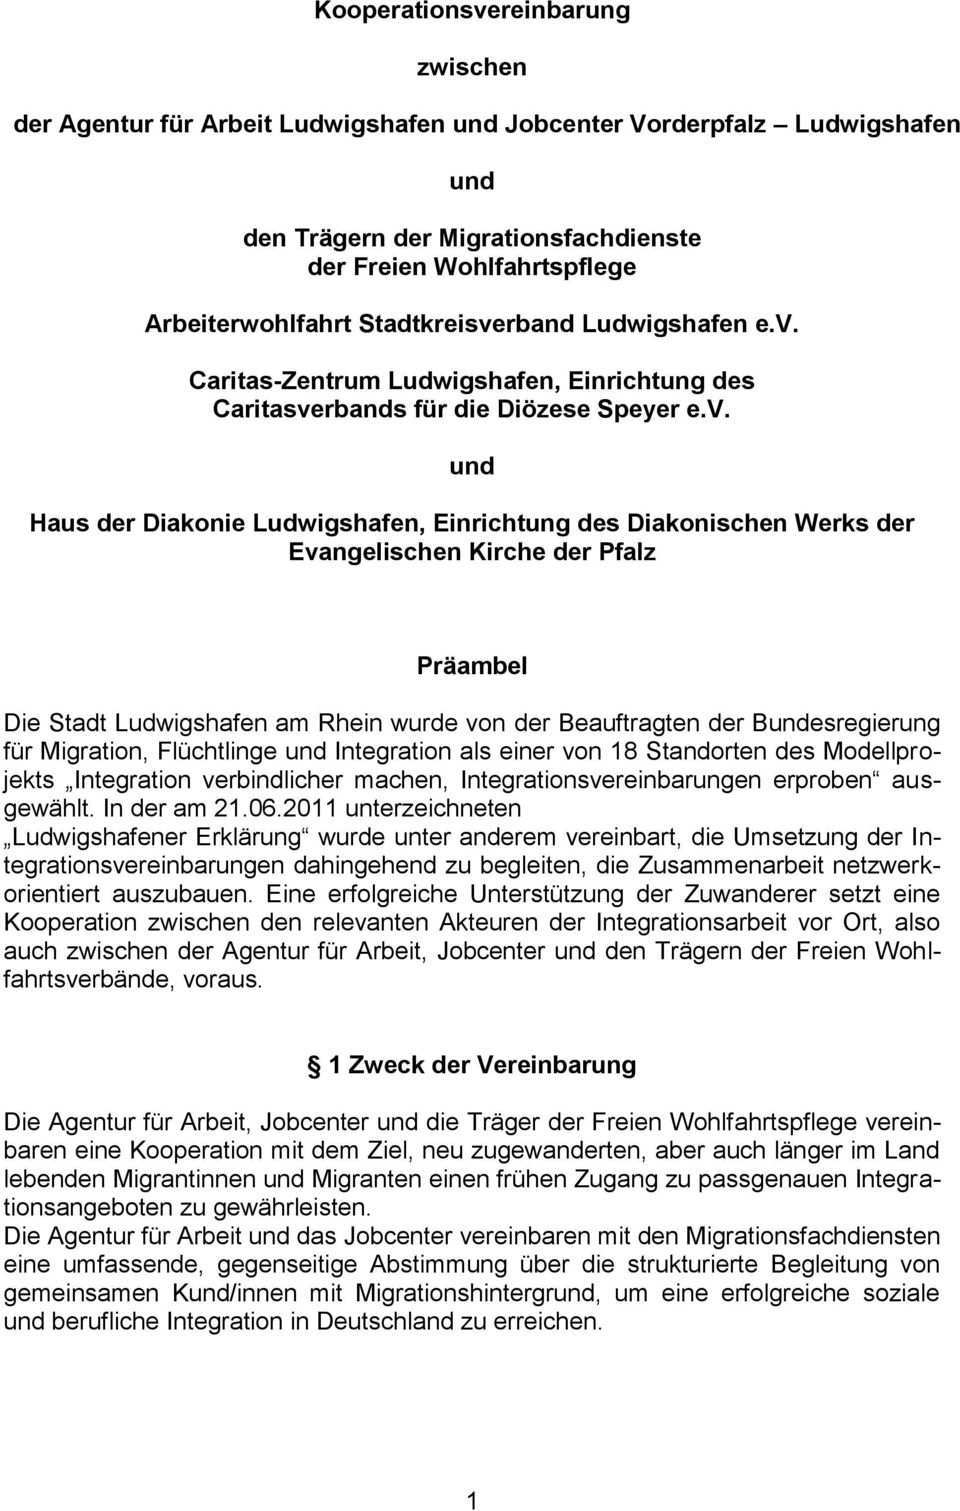 Kooperationsvereinbarung Zwischen Der Agentur Fur Arbeit Ludwigshafen Und Jobcenter Vorderpfalz Ludwigshafen Und Pdf Free Download